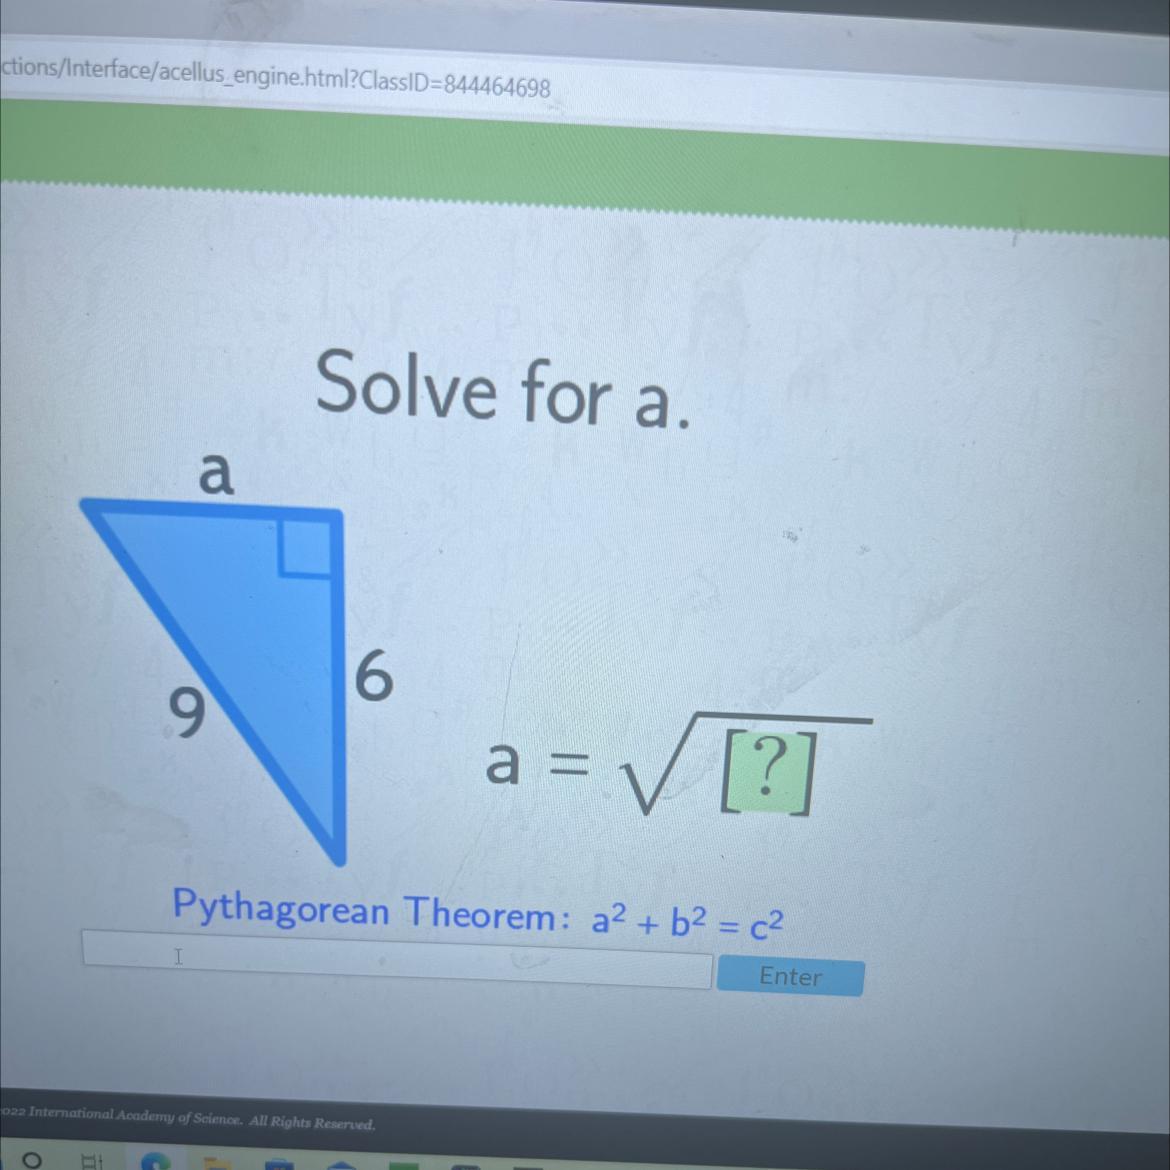 Solve For A.69a = = [?]Pythagorean Theorem: A2 + B = Ca